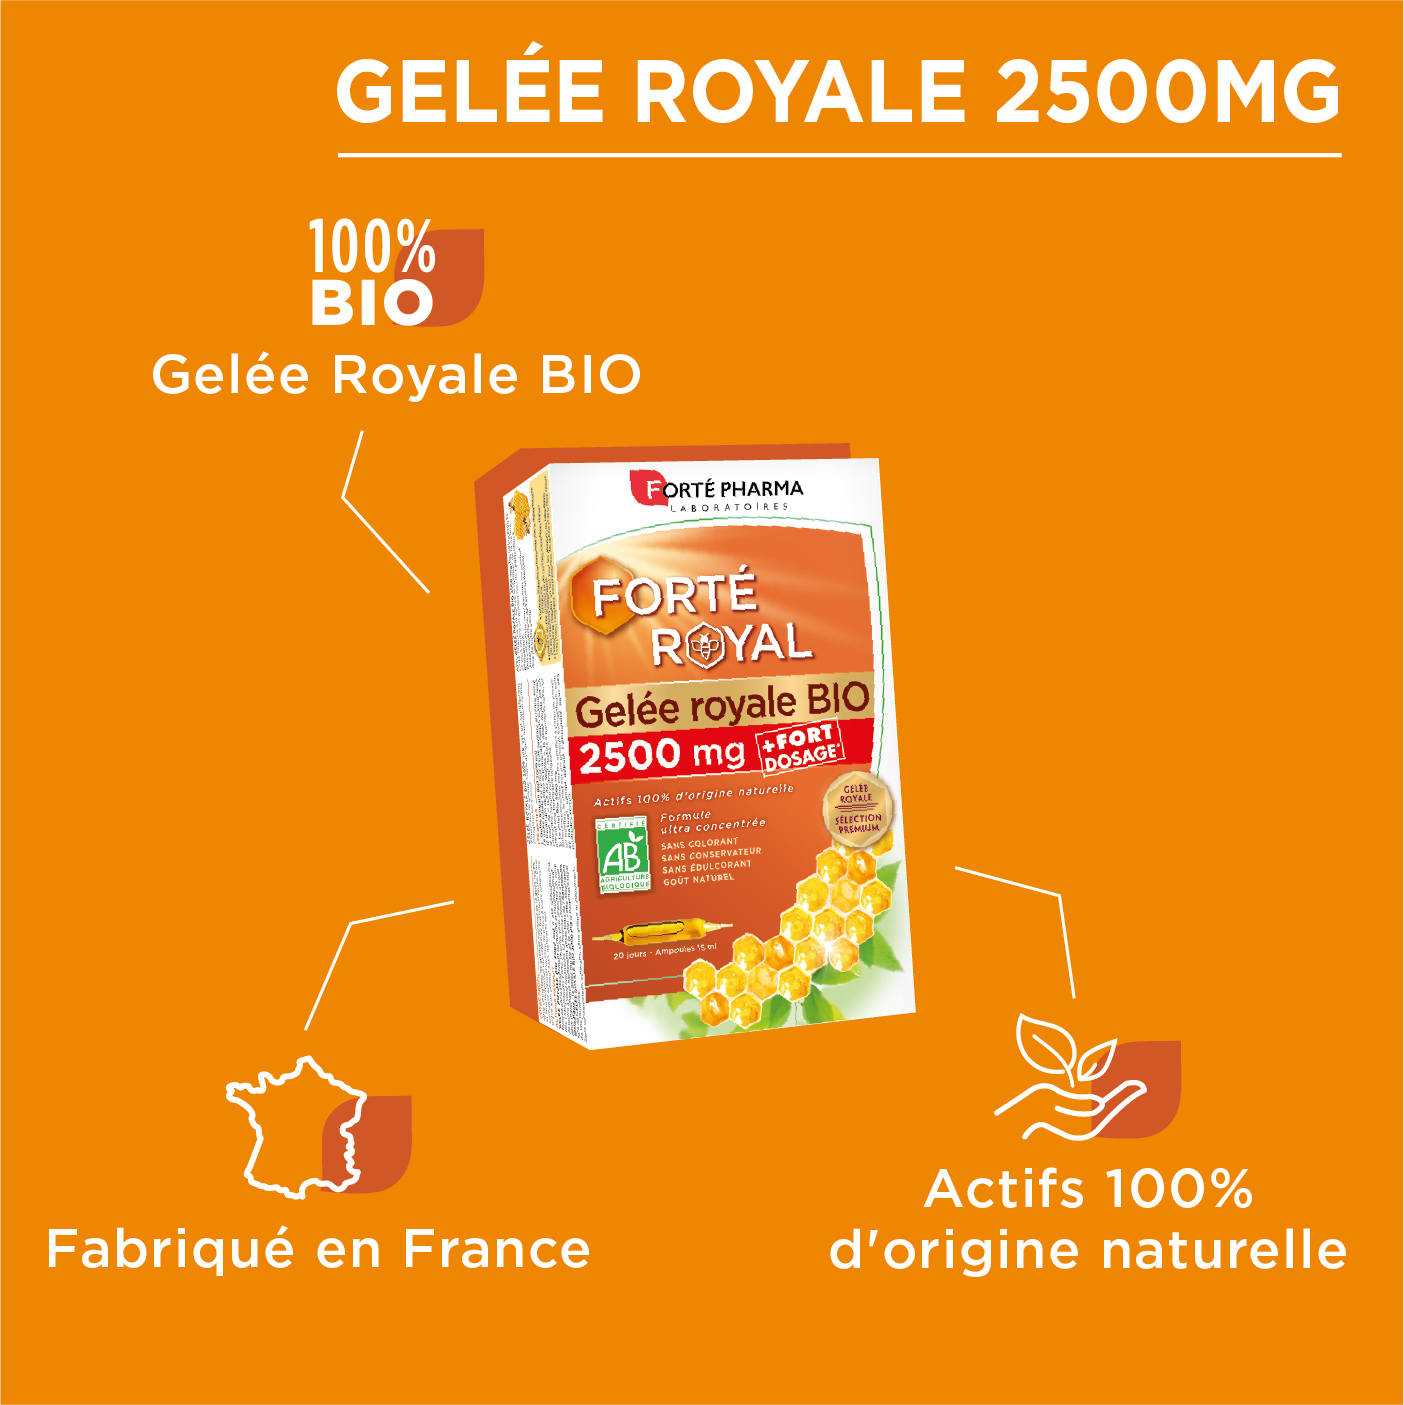 Forté Royal Gelée Royale BIO 2500 mg - Immunité ruche